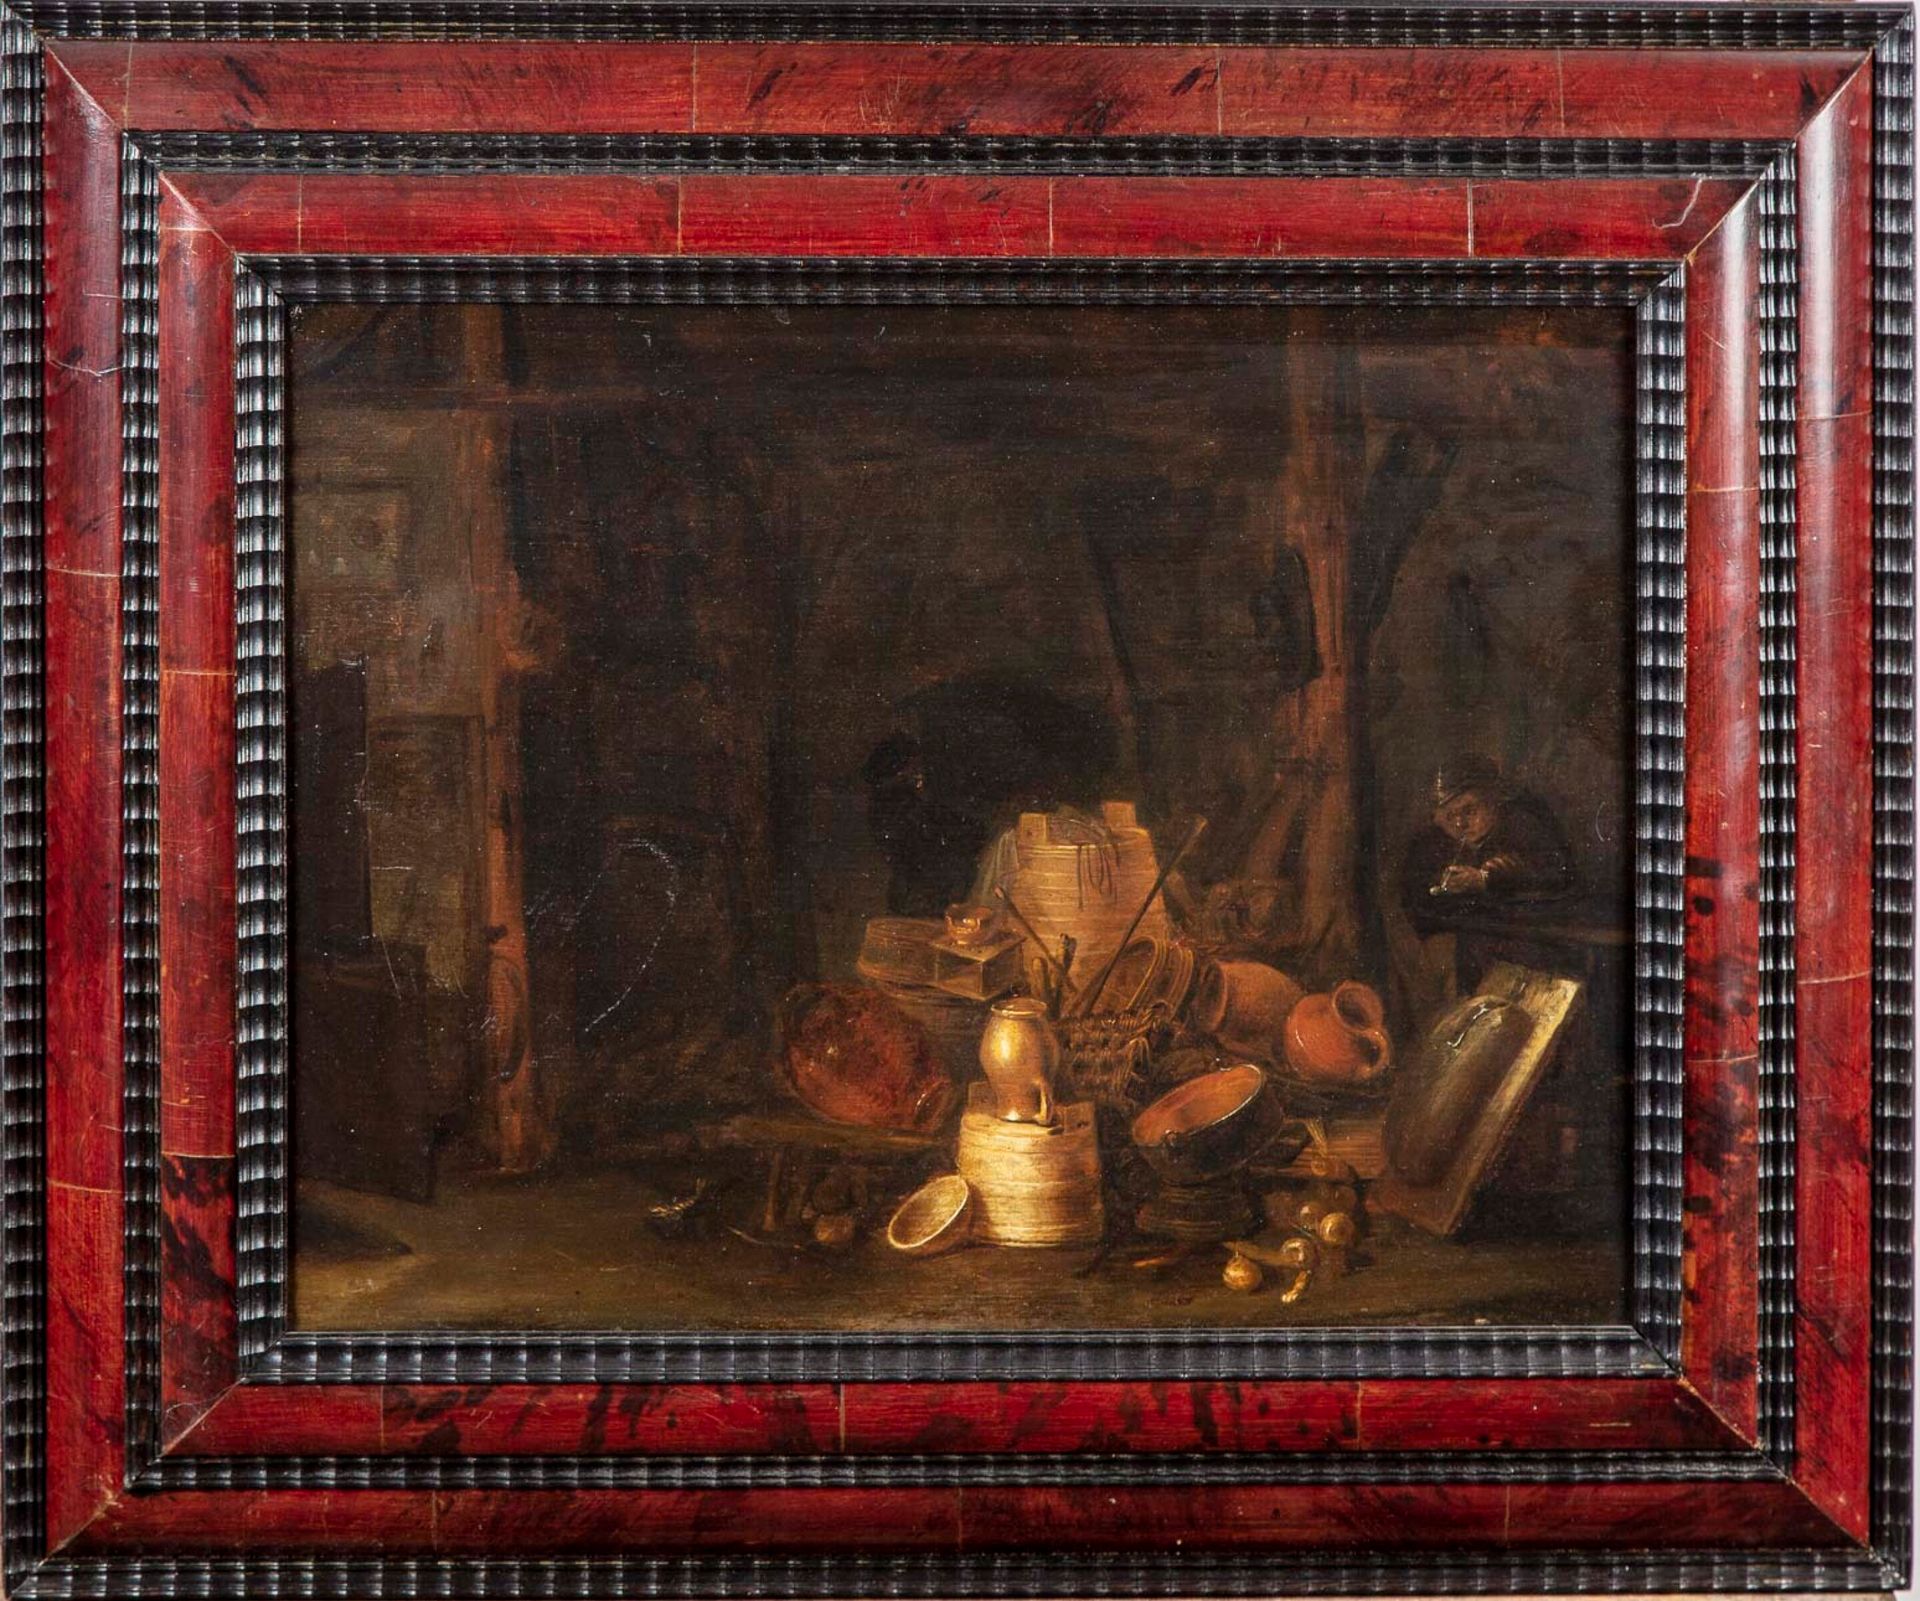 WILLEM KALF 在威廉-卡尔夫（1619-1693）的品味中

后厨的烟熏炉

板上油彩

30 x 40厘米

修缮